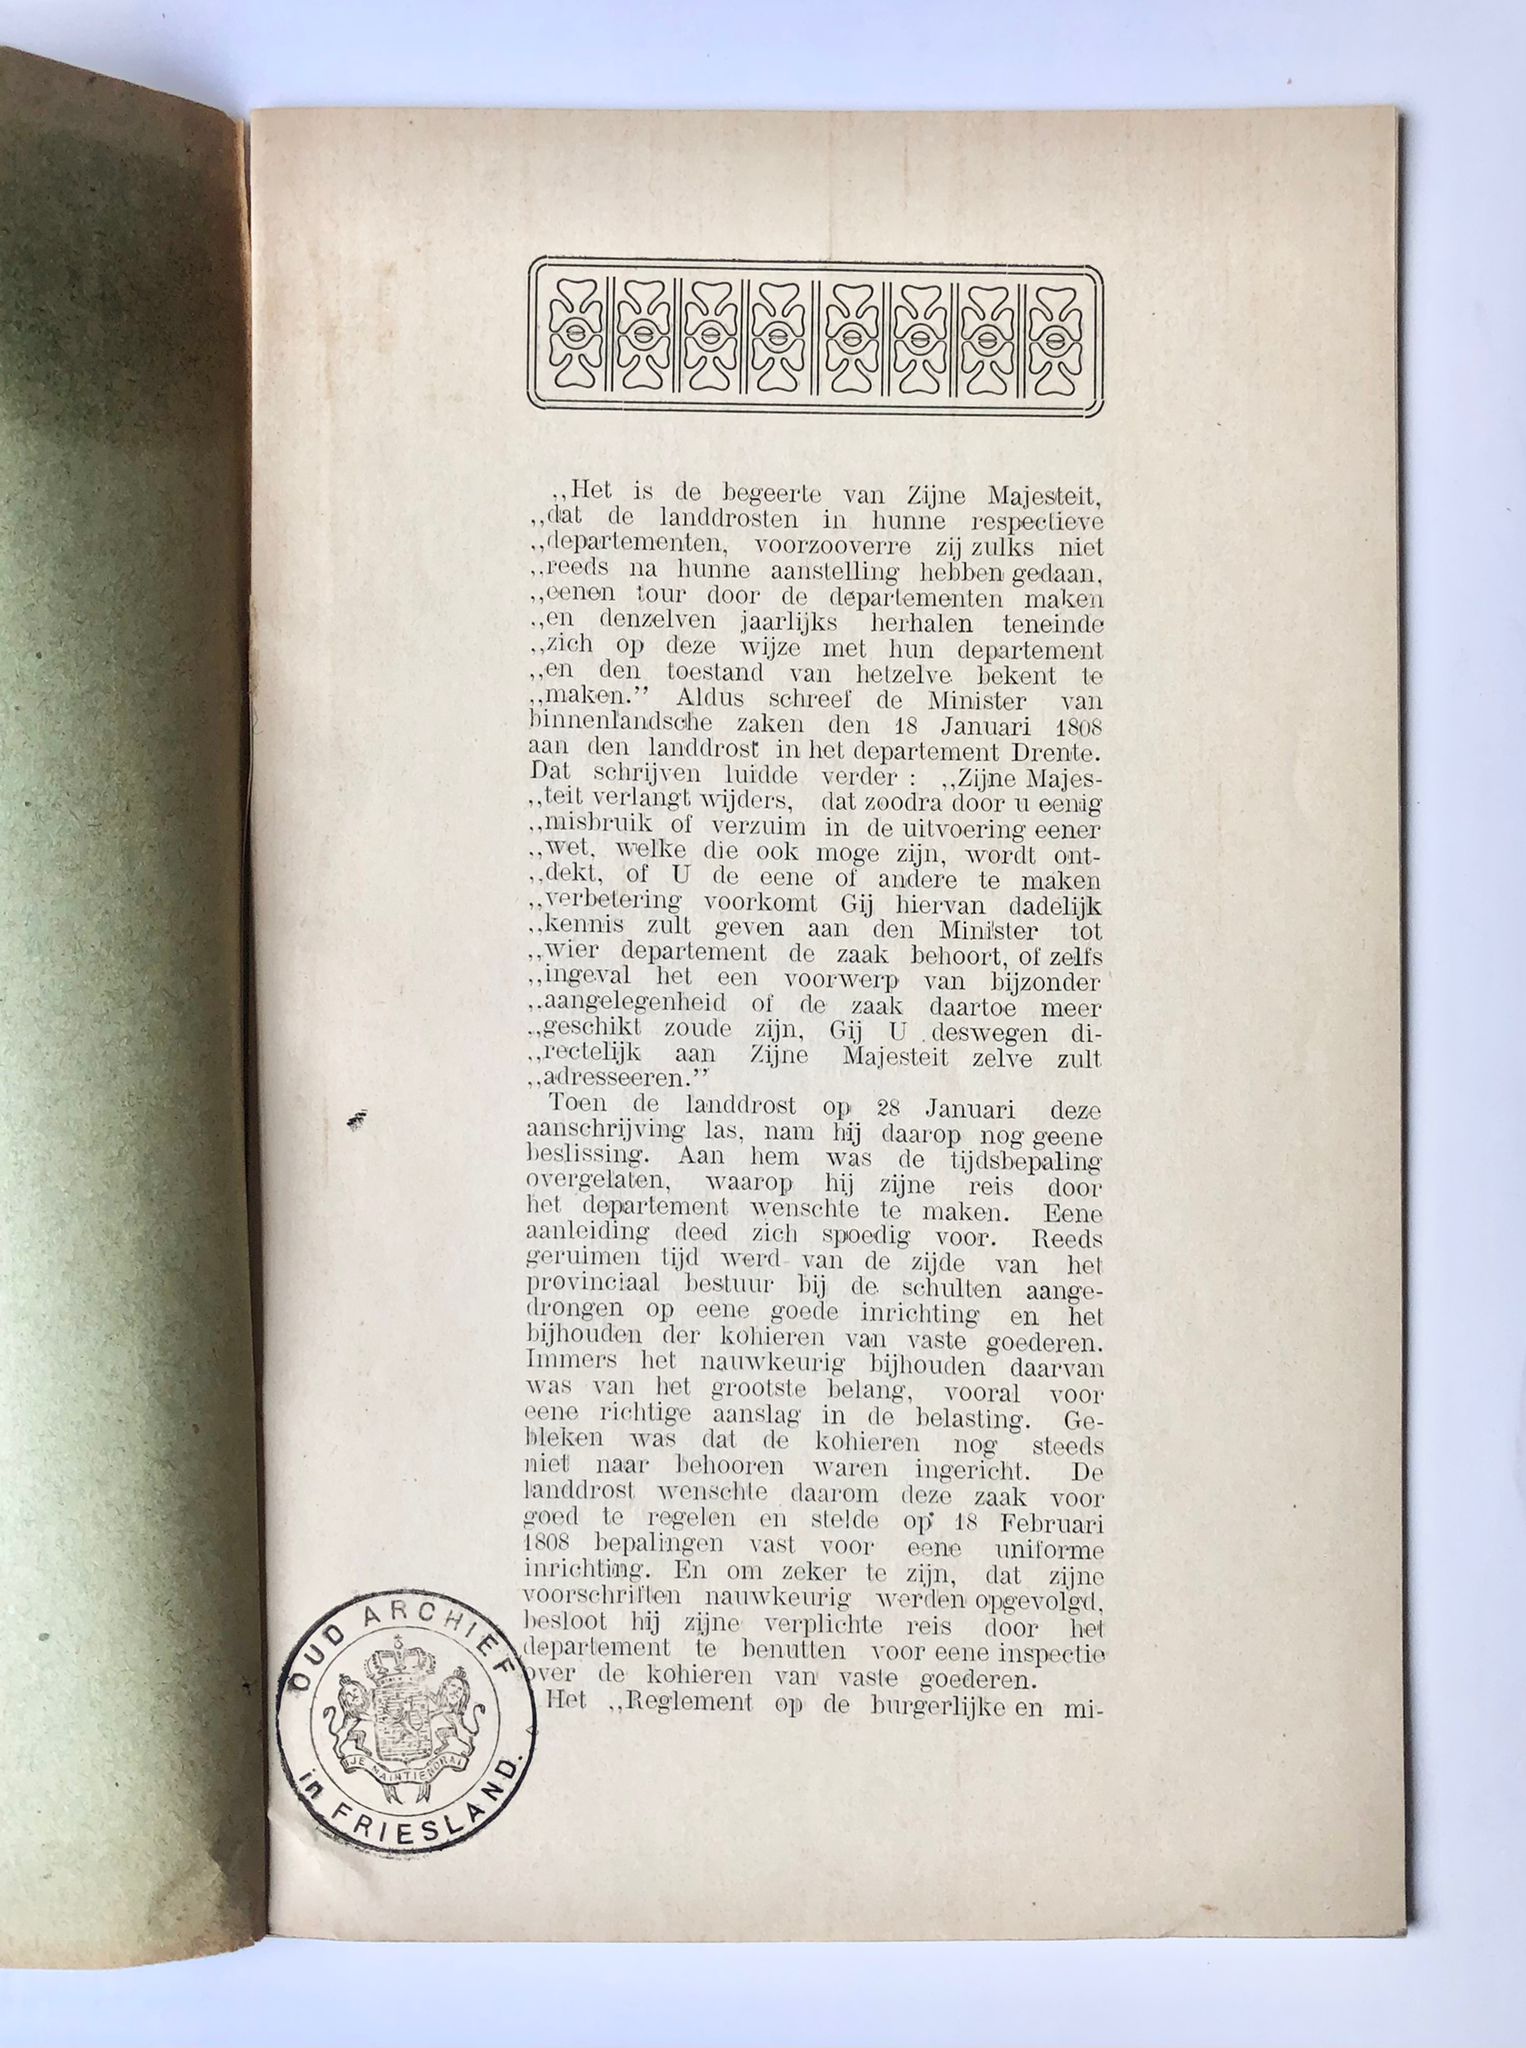 [Drenthe] Een inspectiereis van den Landdrost Mr. Petrus Hofstede door Drente 1808, overgedrukt uit de Prov. Dr. En Asser Courant, Assen, 1911, 22 pp.